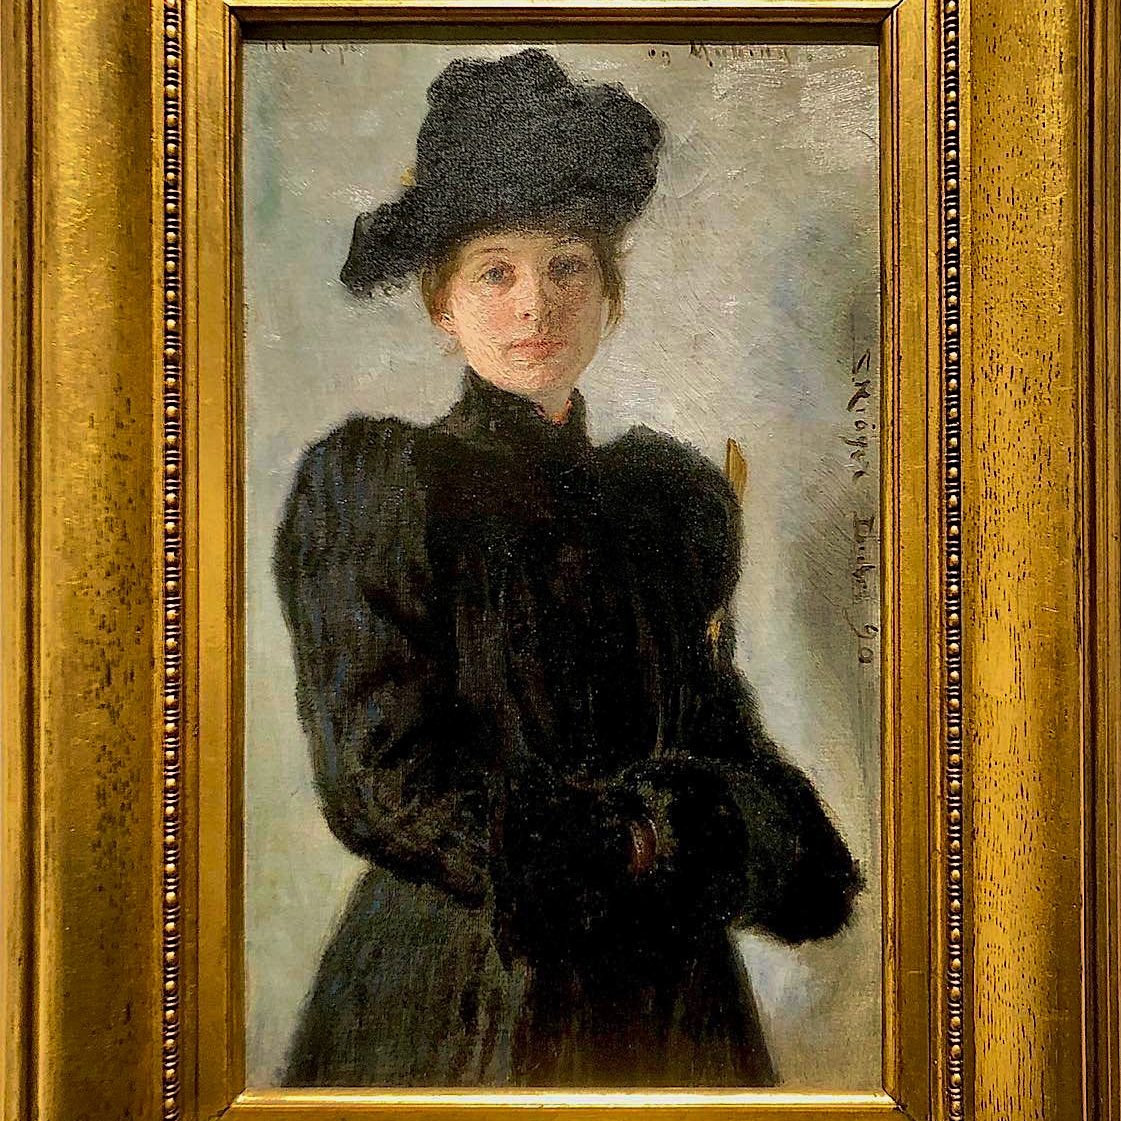 Portræt af 'Marie Krøyer' udført af P. S. Krøyer i 1890